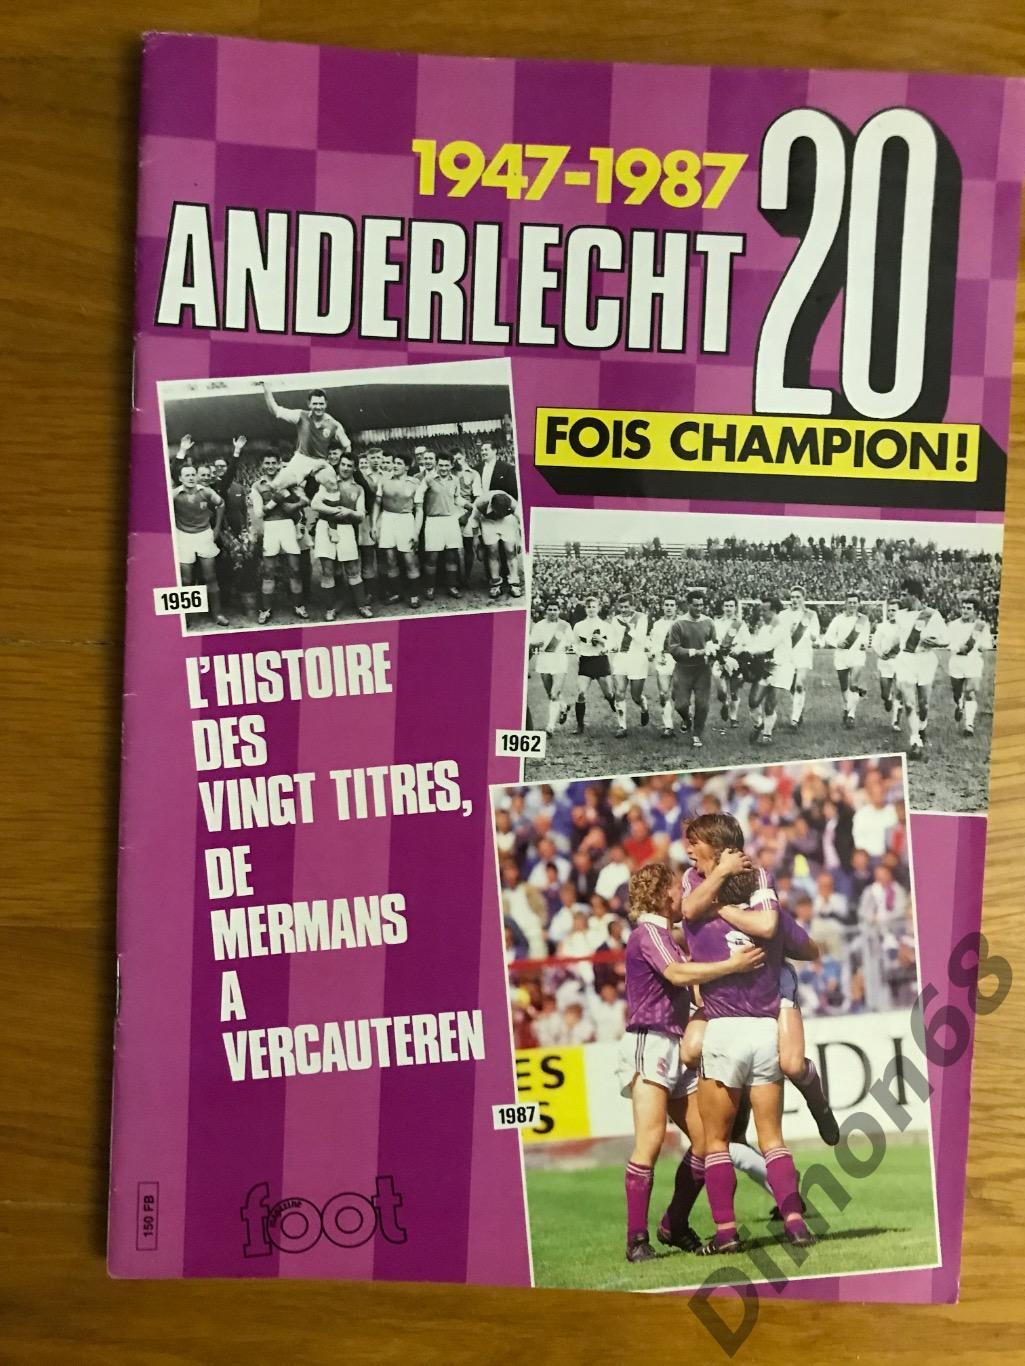 Anderlecht 20 fois champion 2947-1987г без двух листов